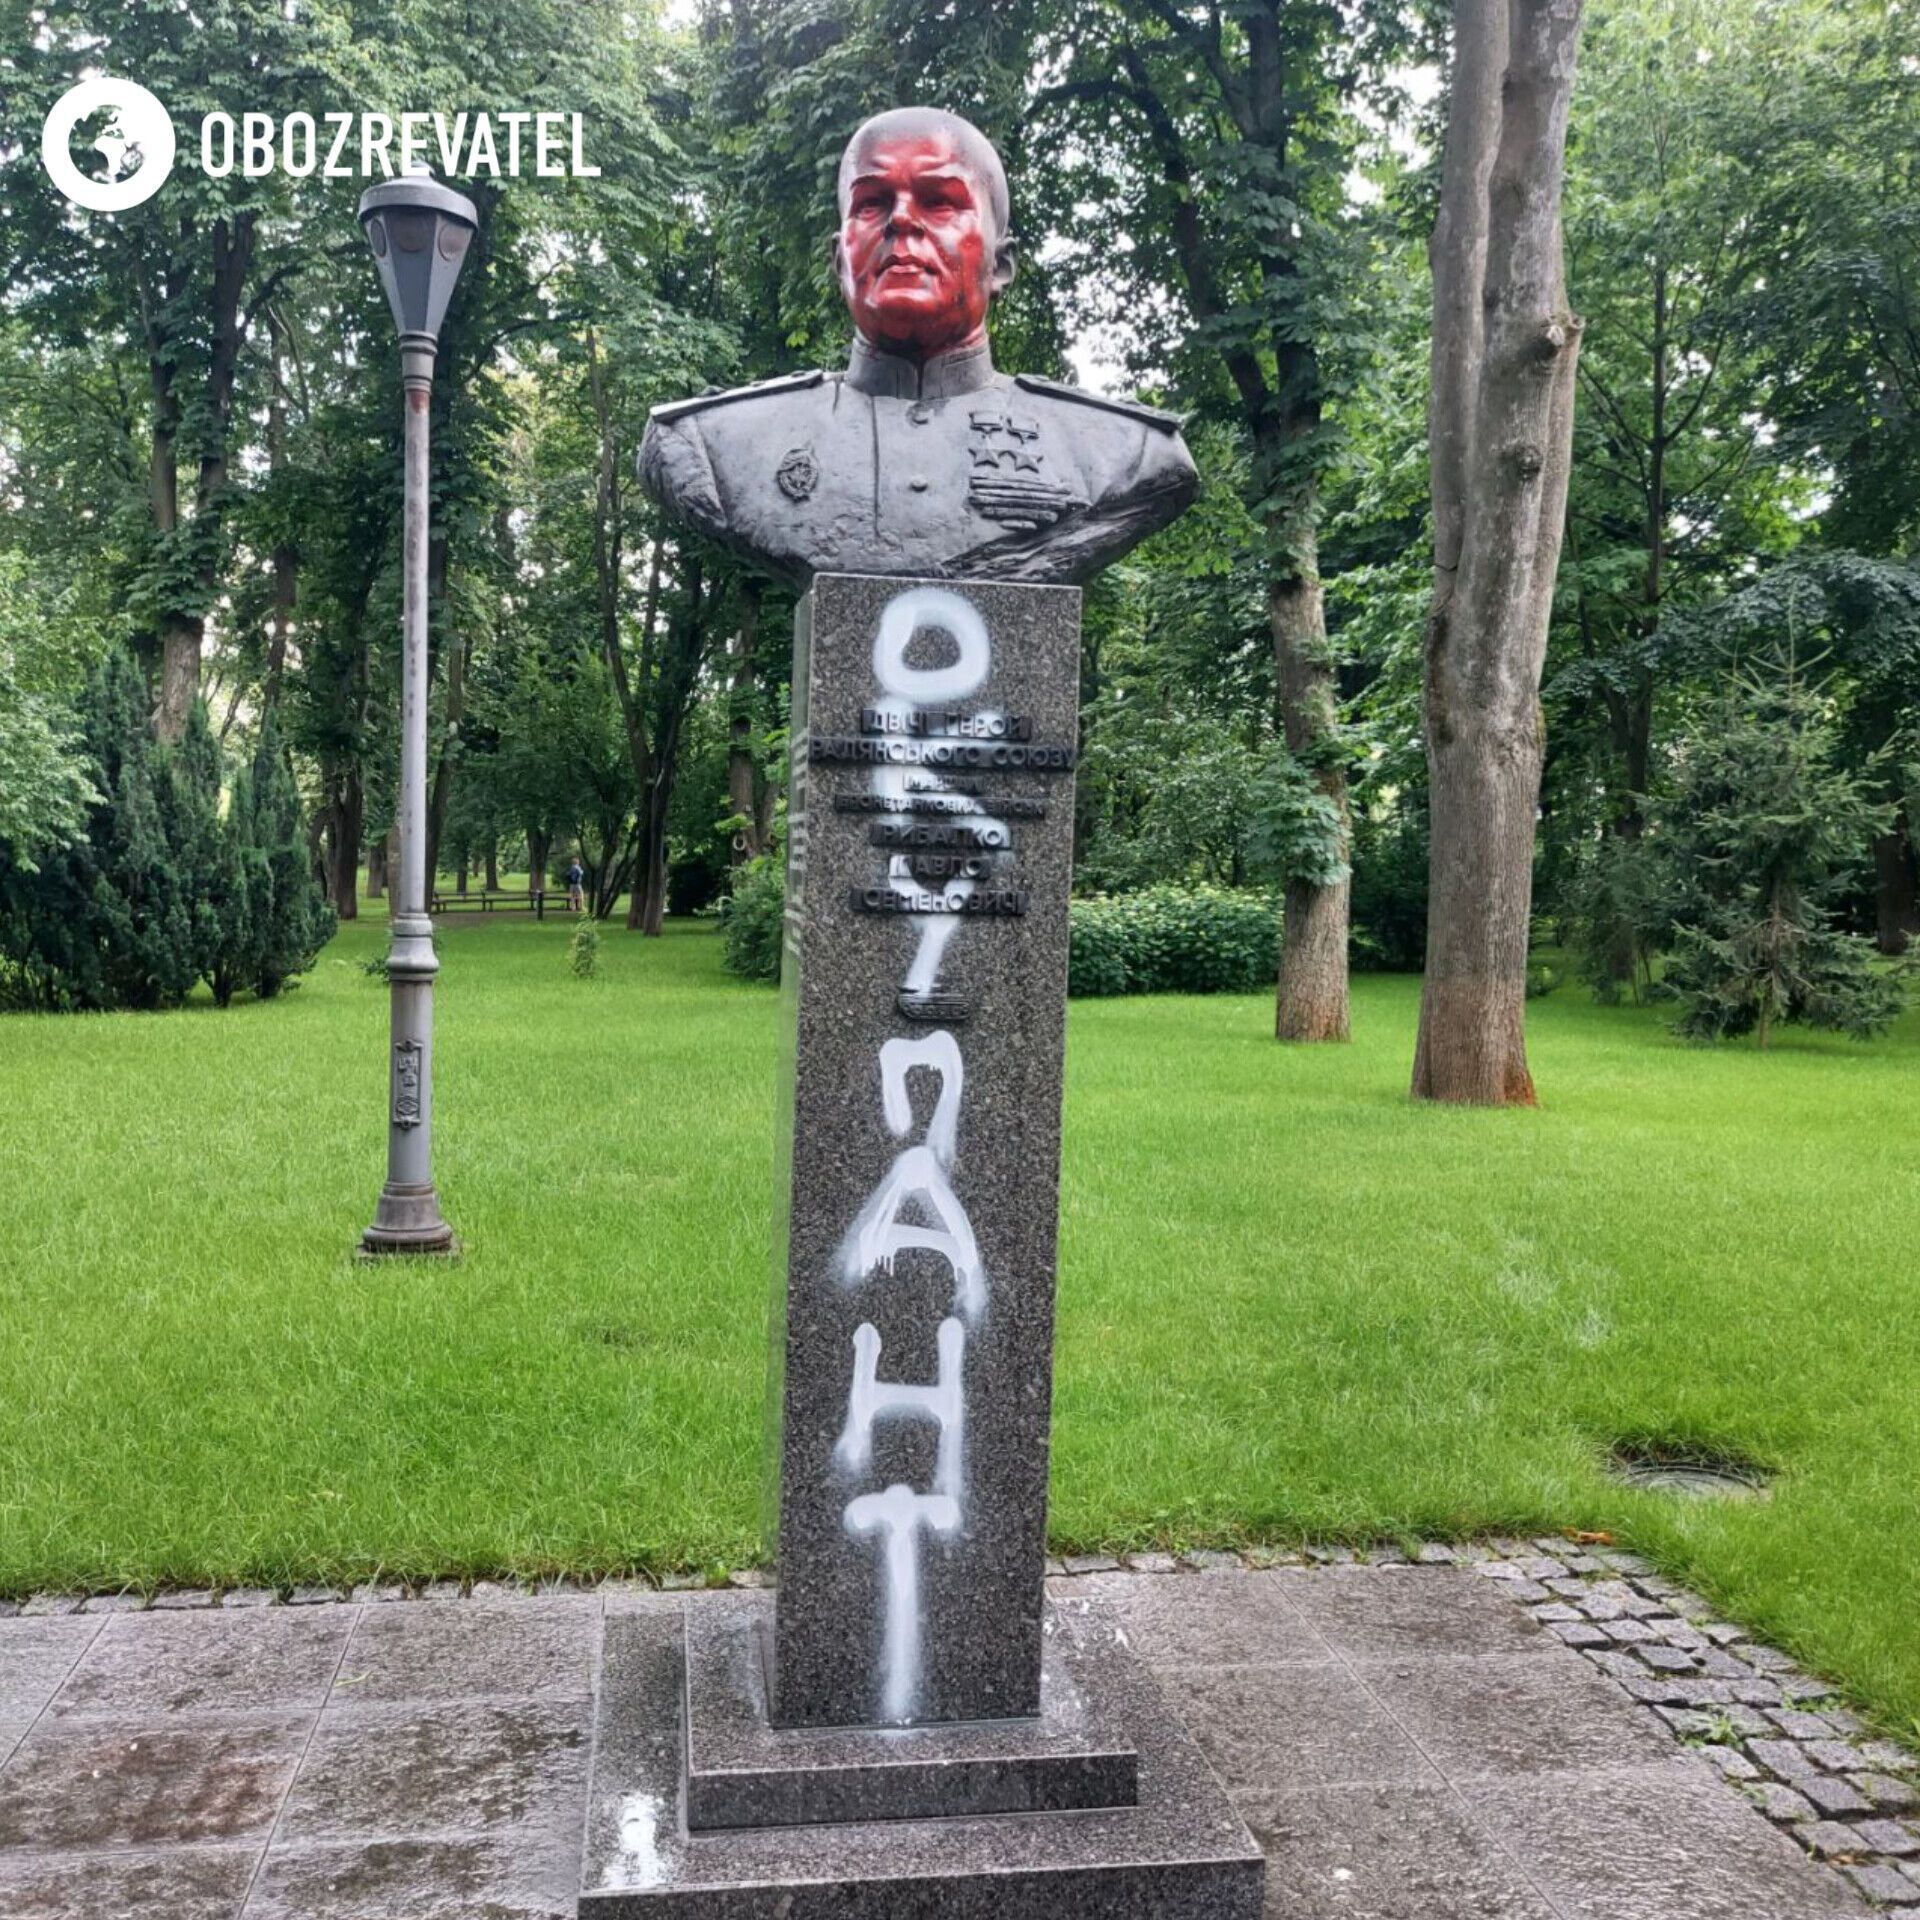 В Киеве бюсты советских партизан облили краской и расписали словами "палач", "оккупант". Фото и видео